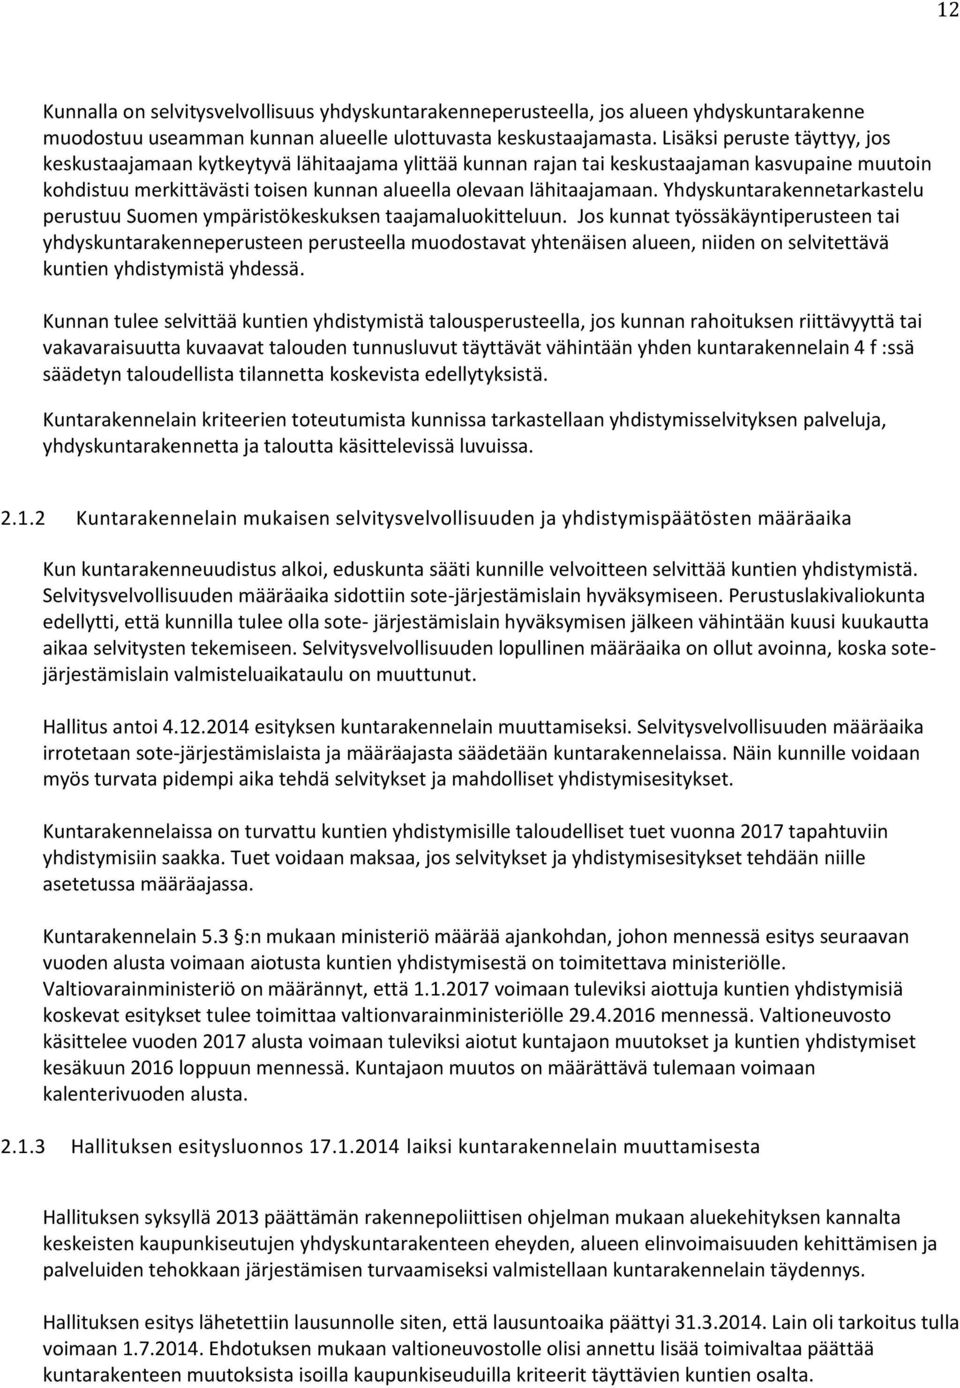 Yhdyskuntarakennetarkastelu perustuu Suomen ympäristökeskuksen taajamaluokitteluun.